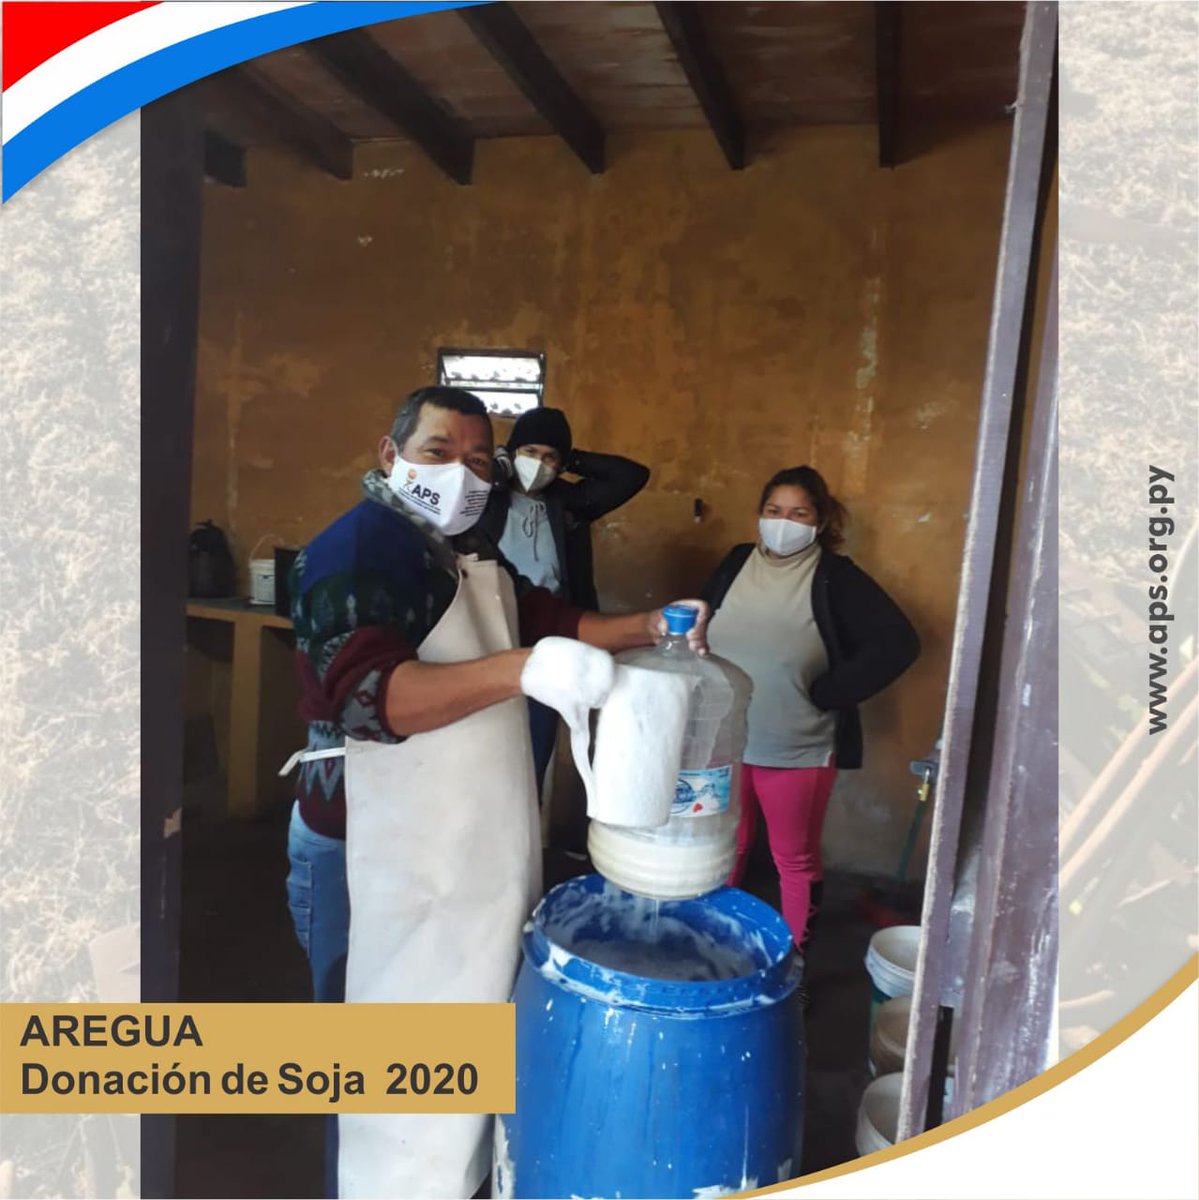 #Aregua
Repartiendo leche de soja para los pobladores que se ven muy afectados por este período de pandemia en Caacupemi 

#FuerzaParaguay #DonaciónDeAlimentos  #ElCampoNoPara 👩🏻‍🌾👨🏻‍🌾🌱 #merienda #lechedesoja #DonaciónSoja #recetasconsoja